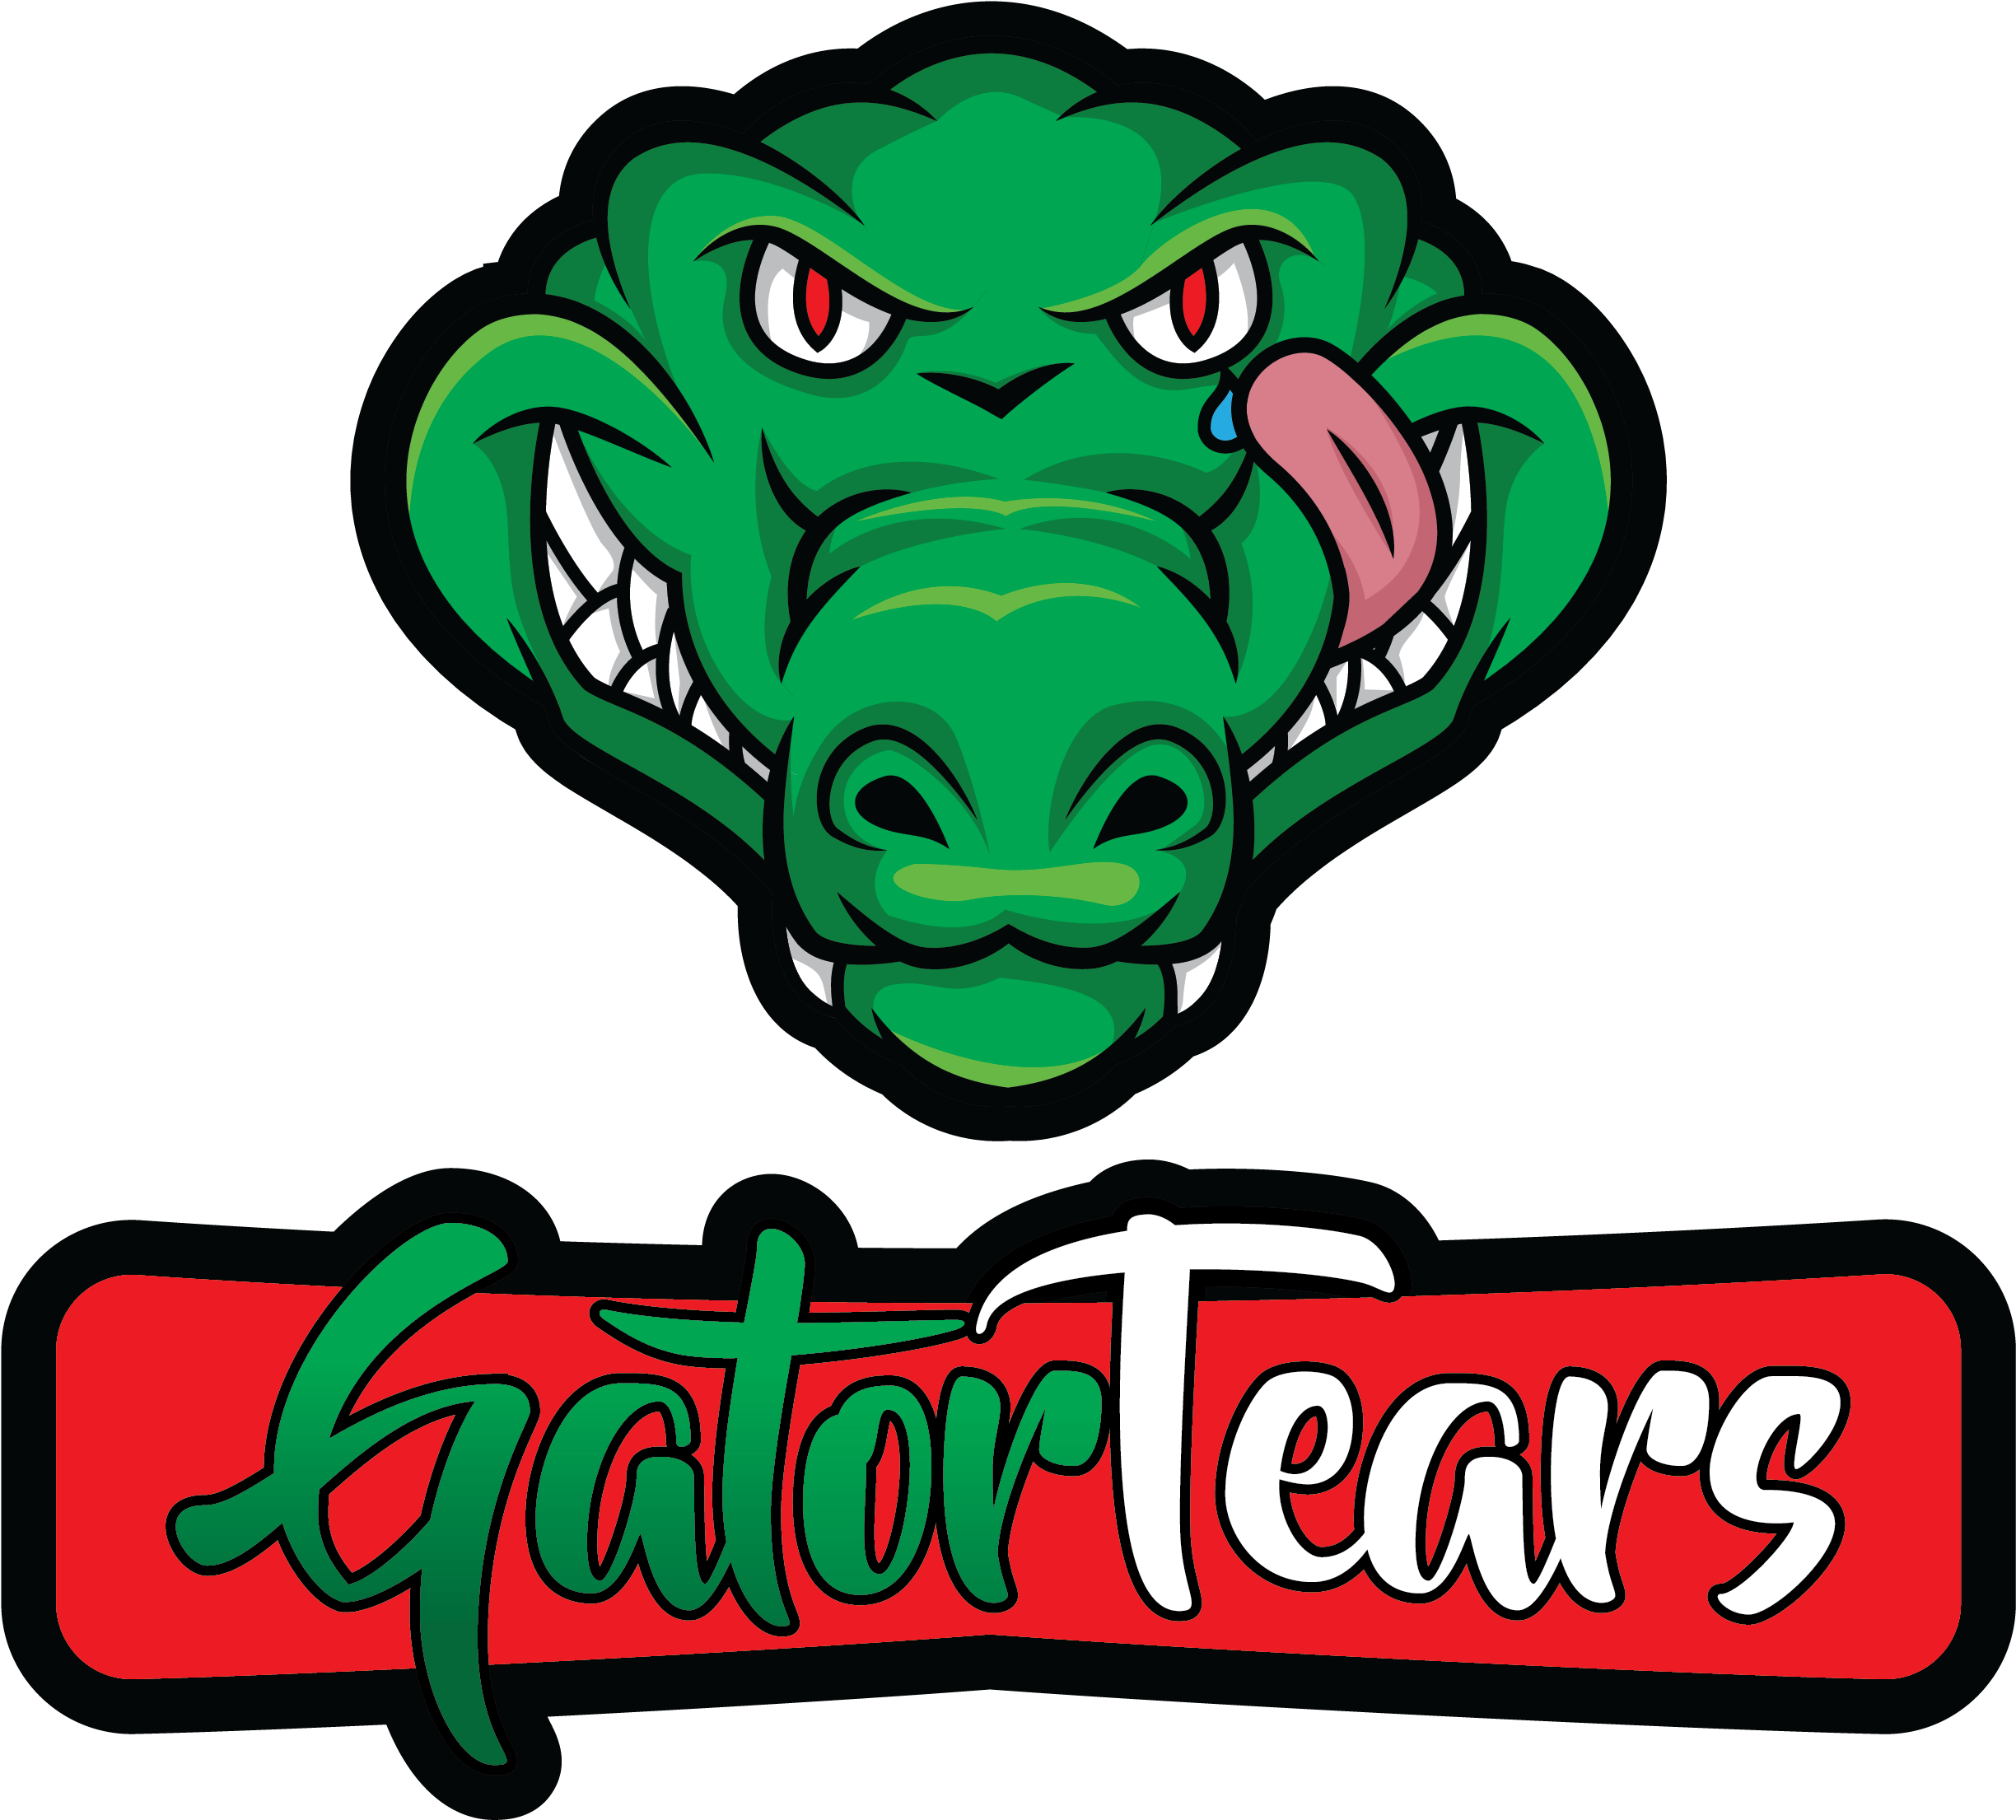 Gator Tears Hot Sauce - Gator Tears Hot Sauce (2551x3300)